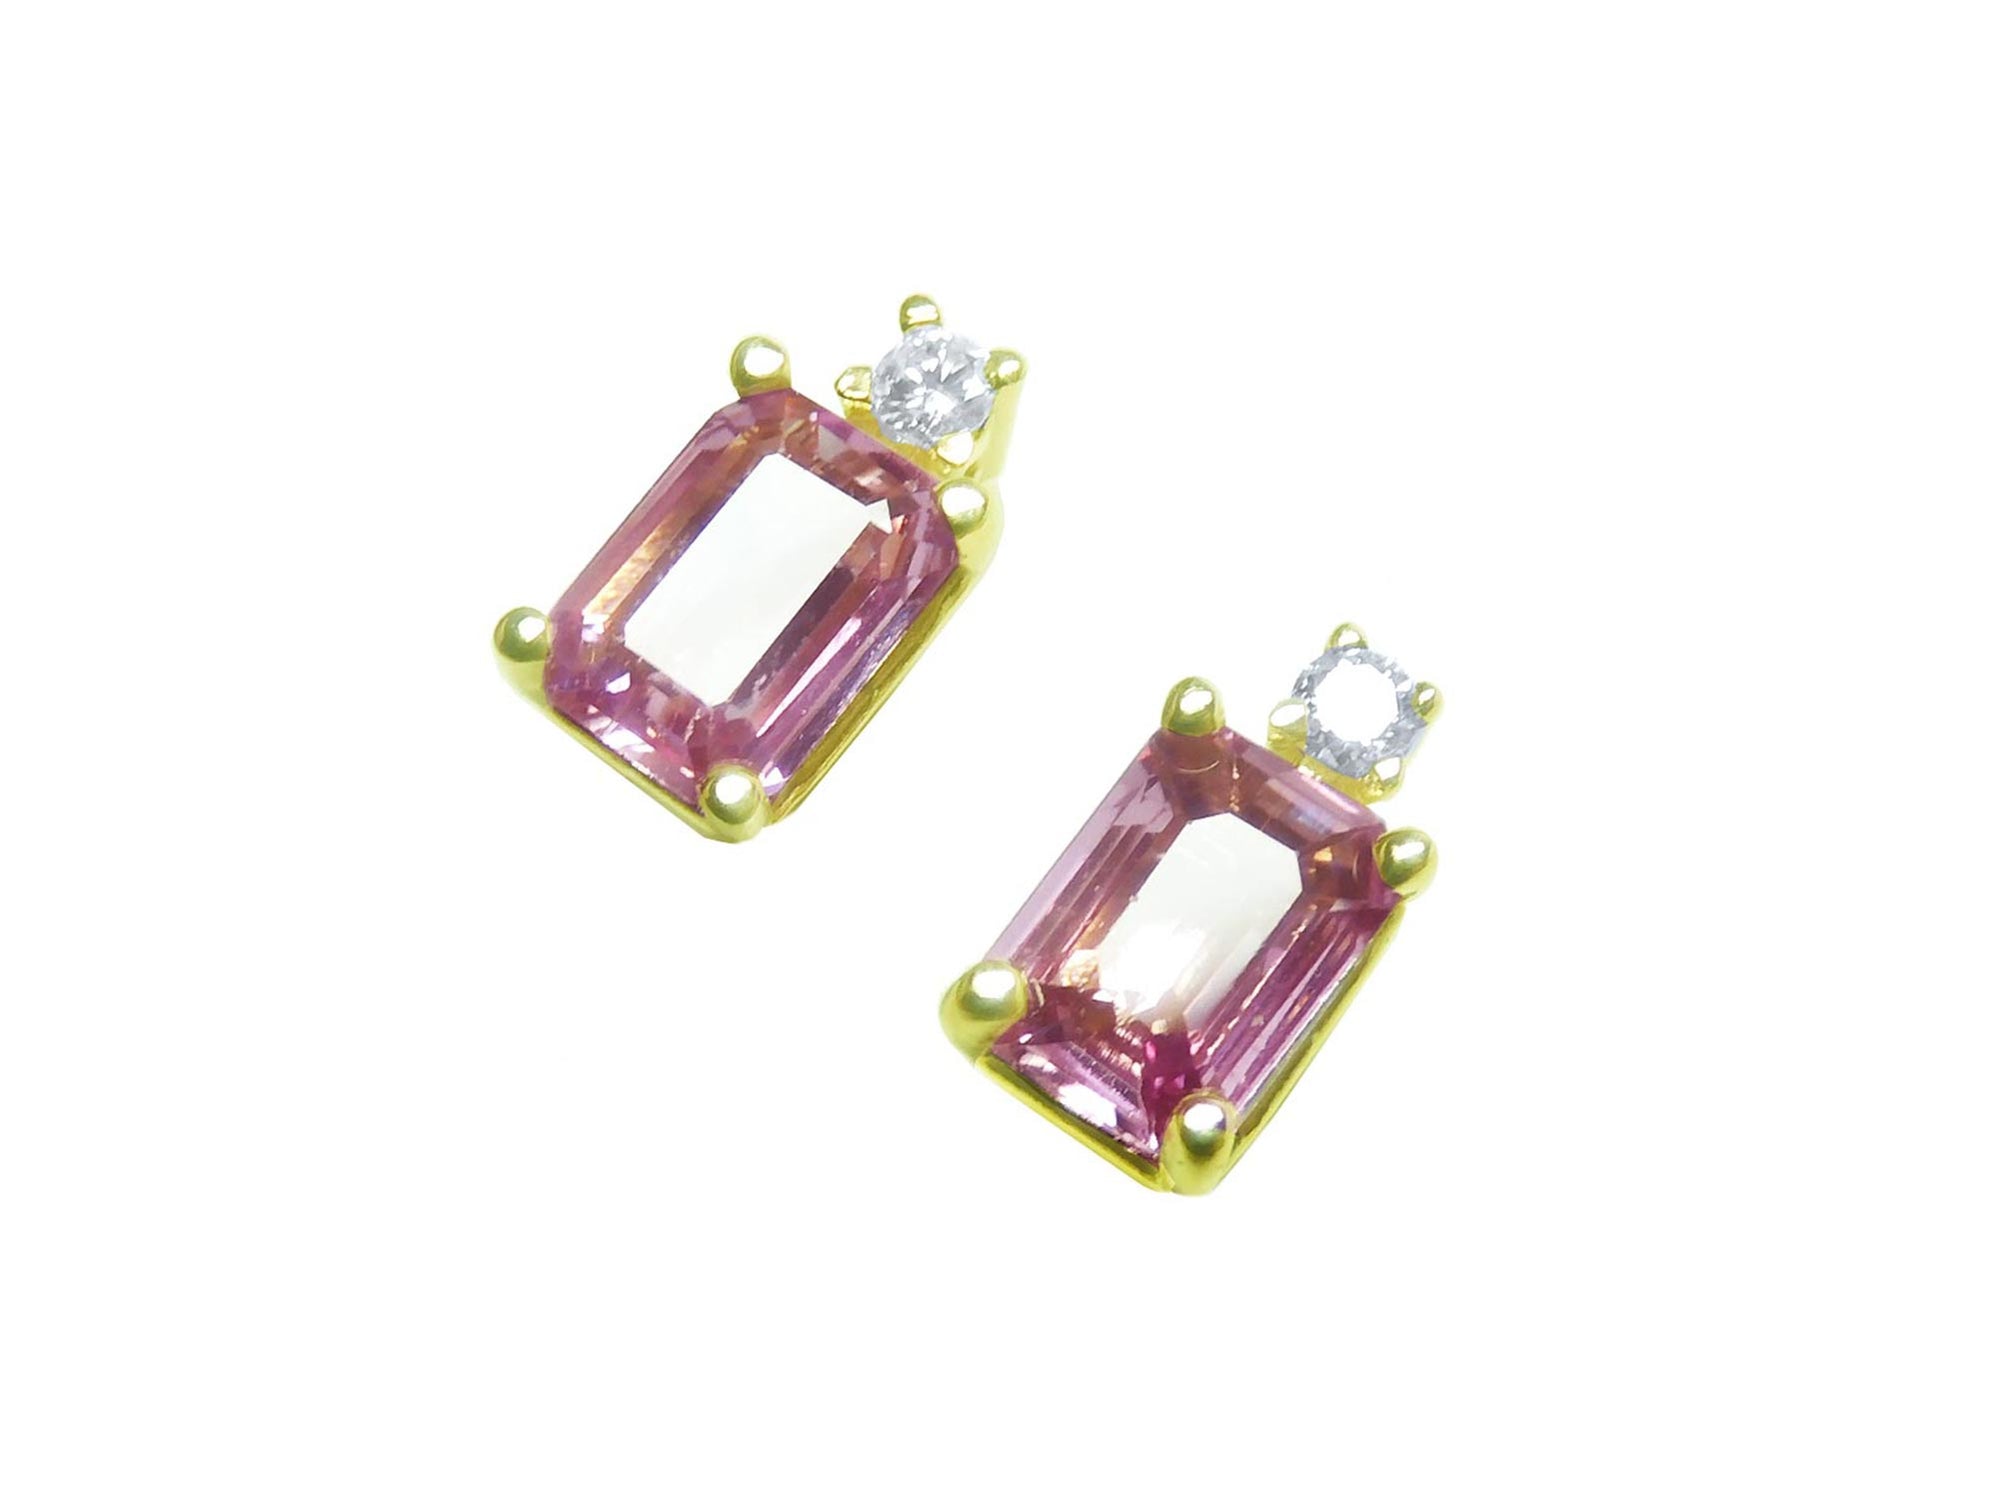 Reap pink sapphire stud earrings